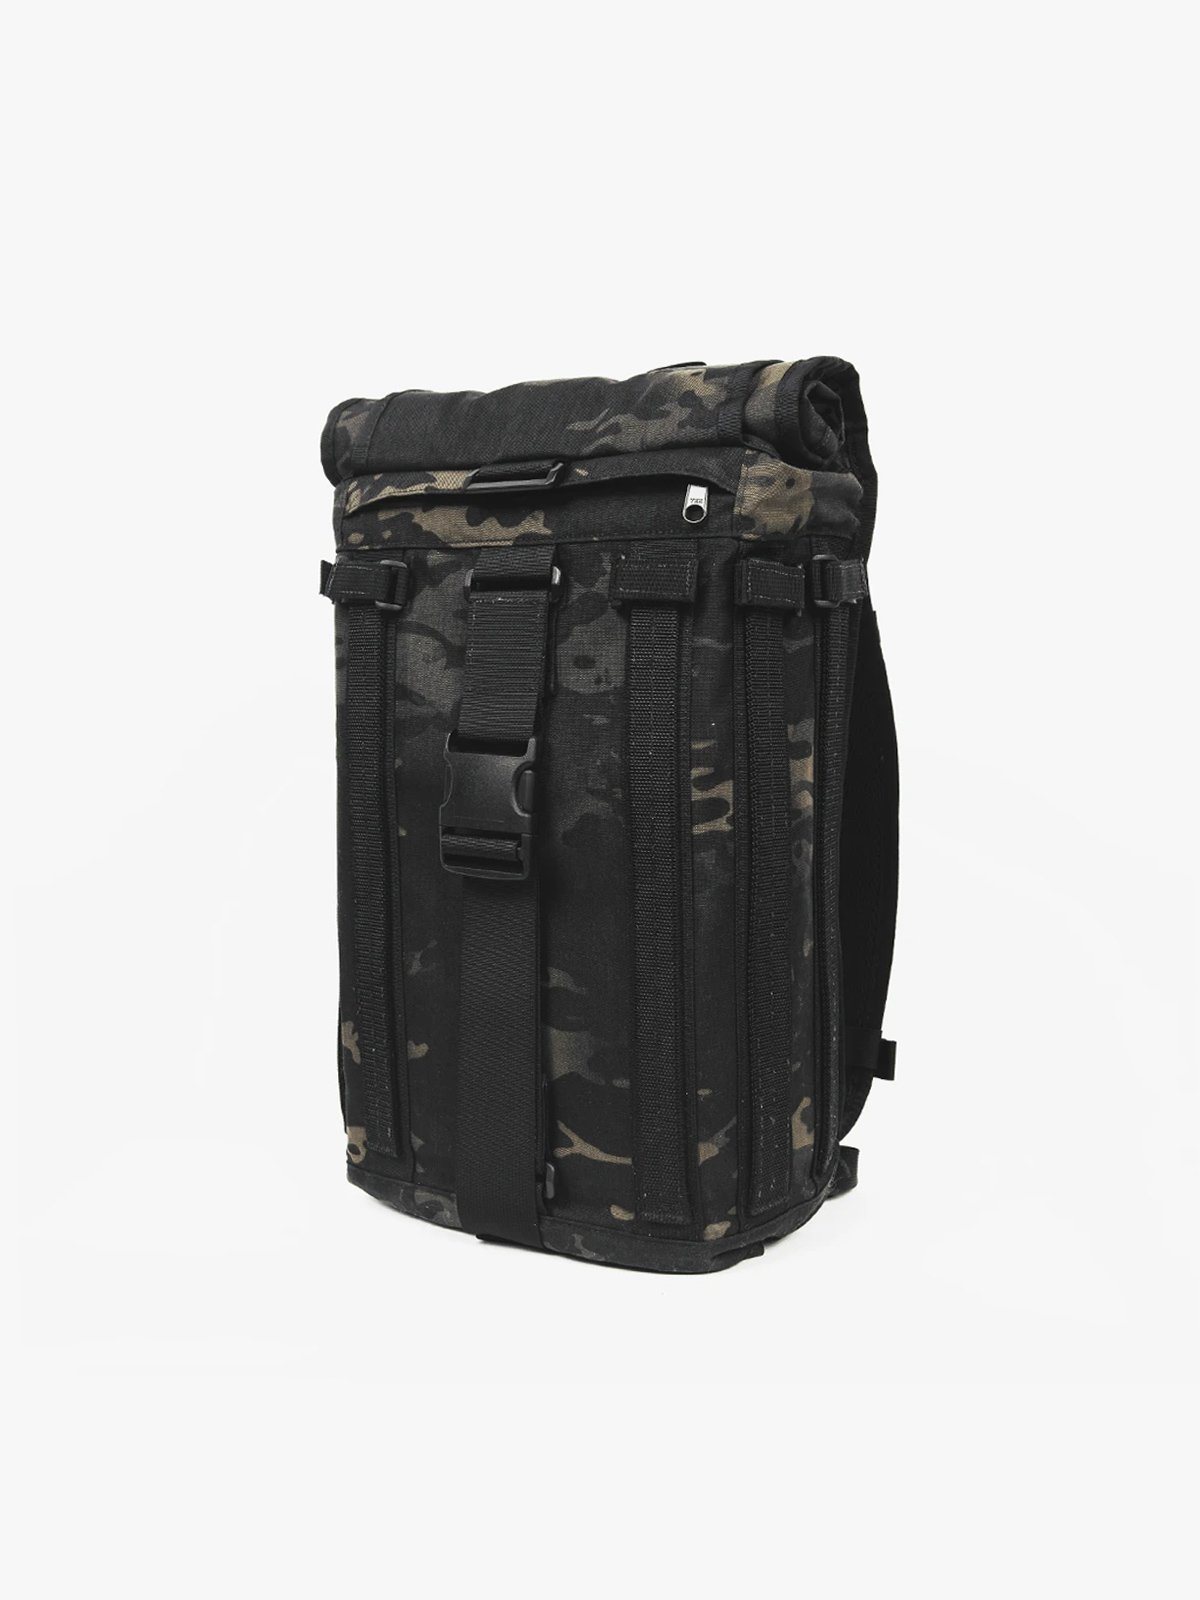 R6 Arkiv Field Pack 40L by Mission Workshop - Weatherproof Bags & Technical Apparel - San Francisco & Los Angeles - Construit pour durer - Garanti pour toujours